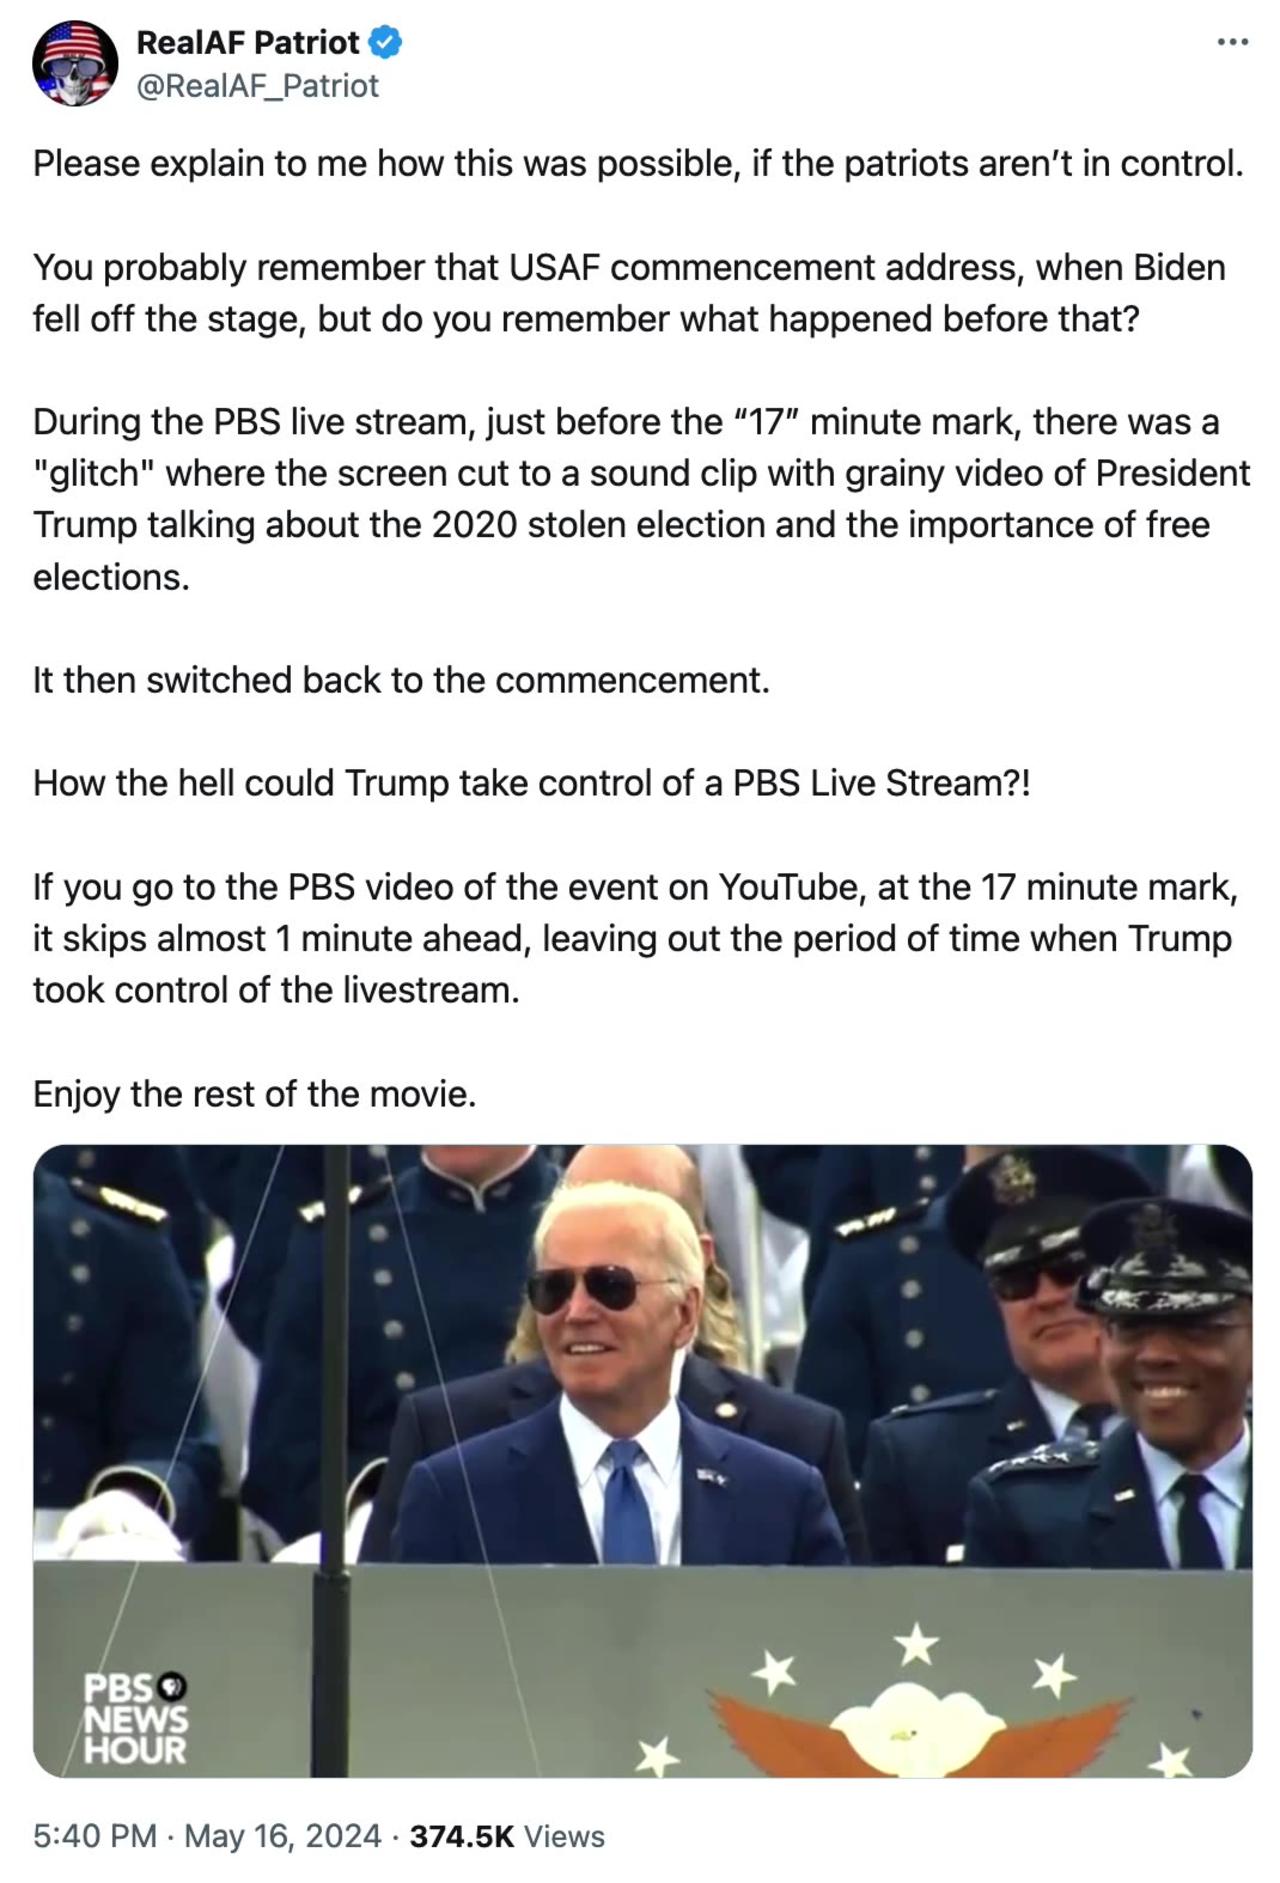 PBS Biden live stream,17min, Glitch~Trump talks of Stolen 2020 Election